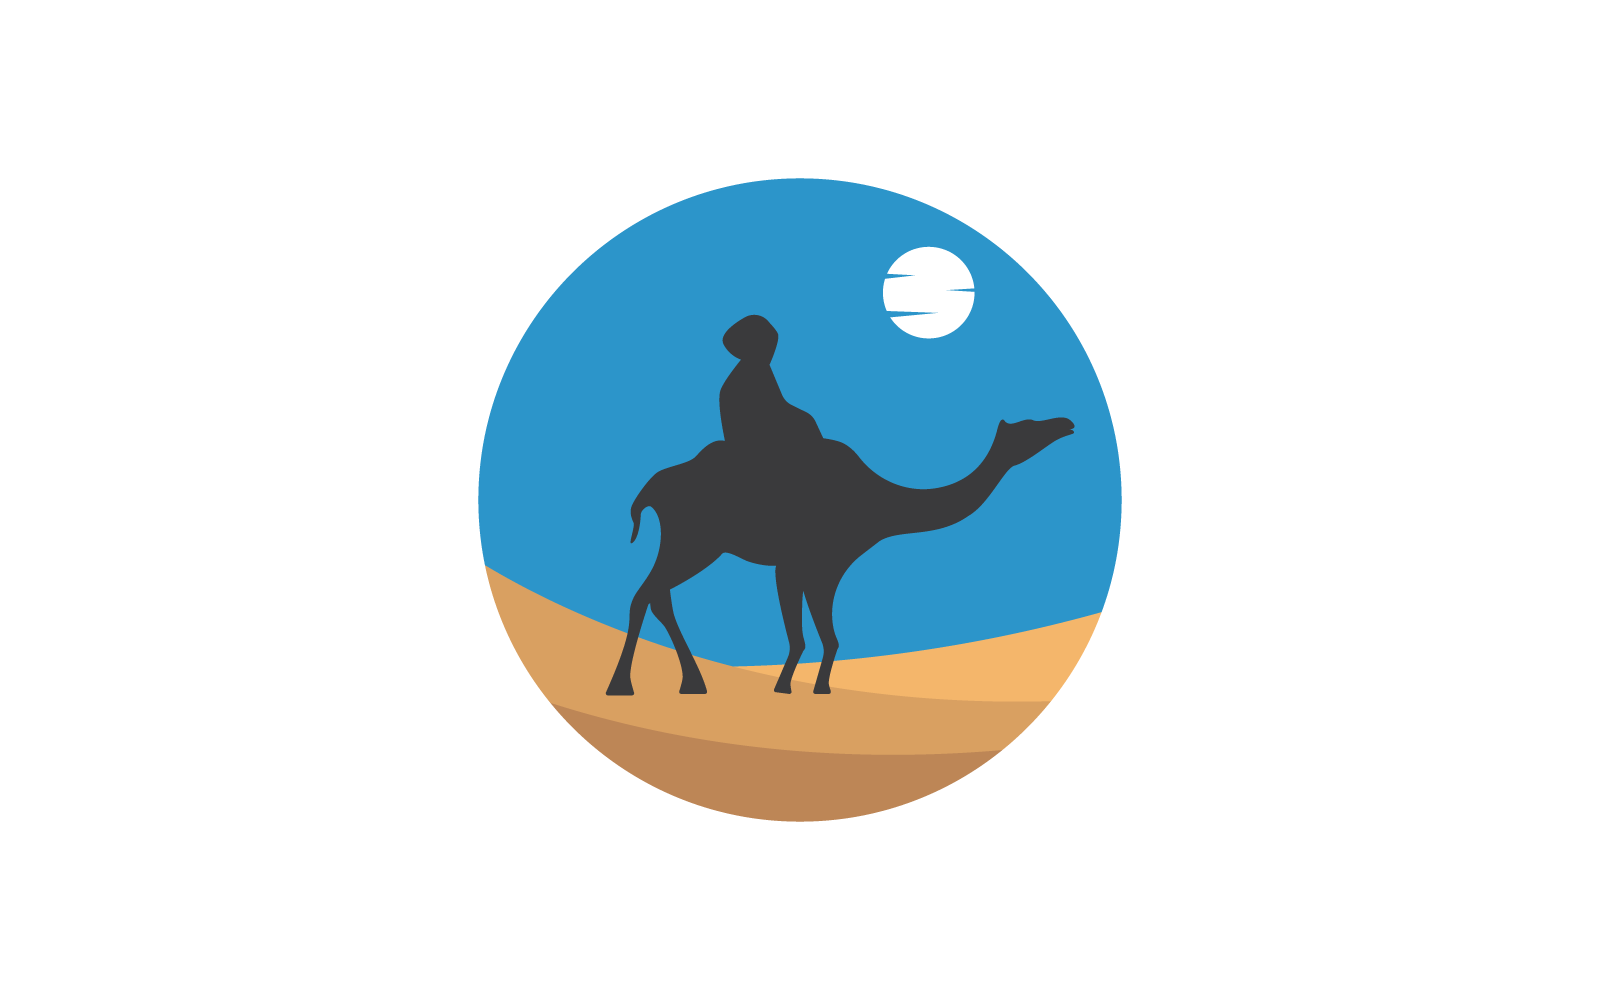 Camel design illustration logo template